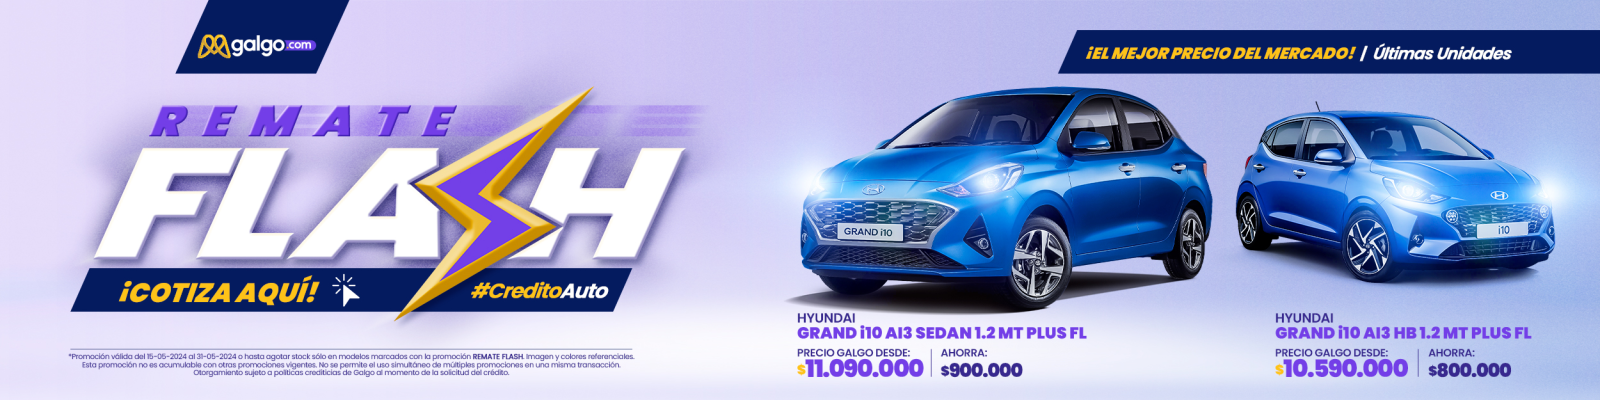 Remate en Hyundai, con los mejores precios del mercado, solo en Galgo